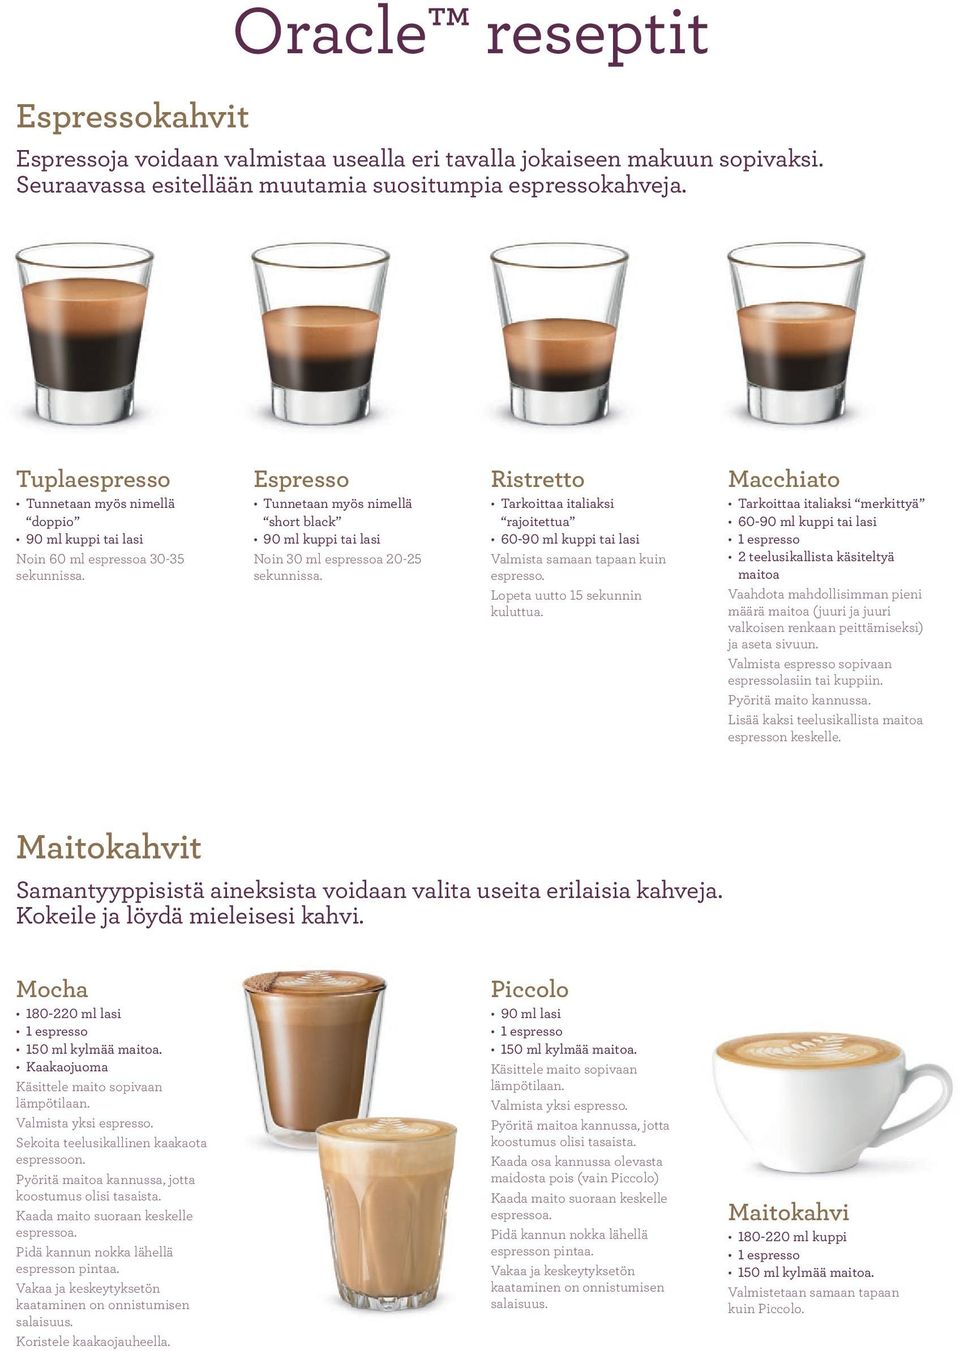 Espresso Tunnetaan myös nimellä short black 90 ml kuppi tai lasi Noin 30 ml espressoa 20-25 sekunnissa.